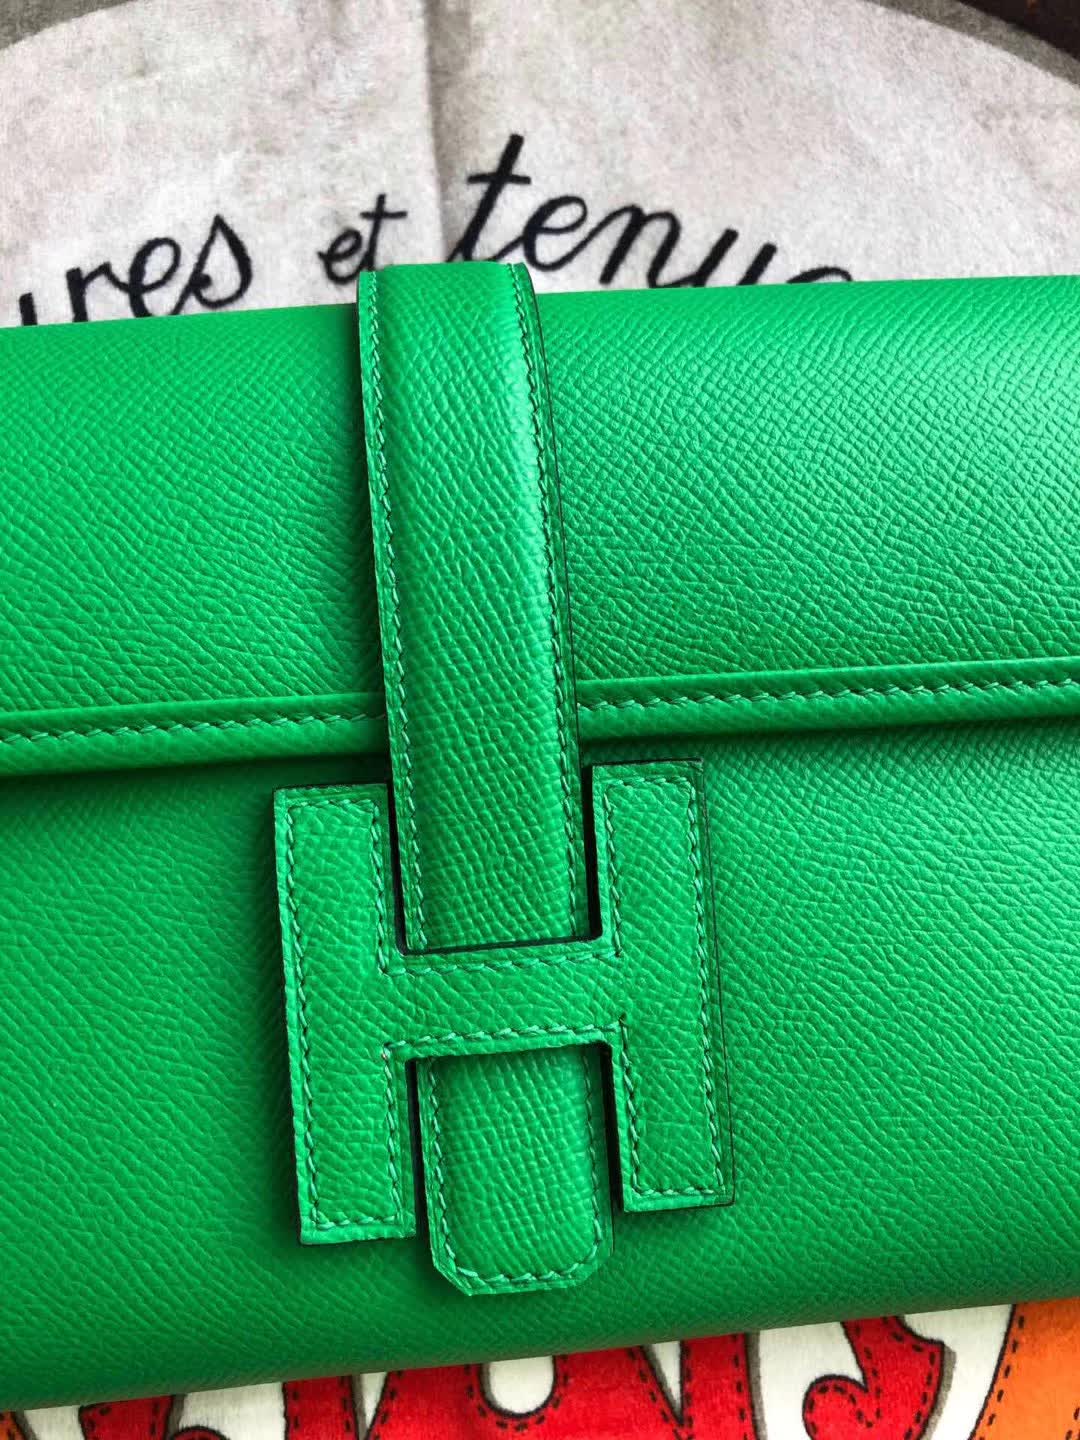 Hermes Wallets & Purse